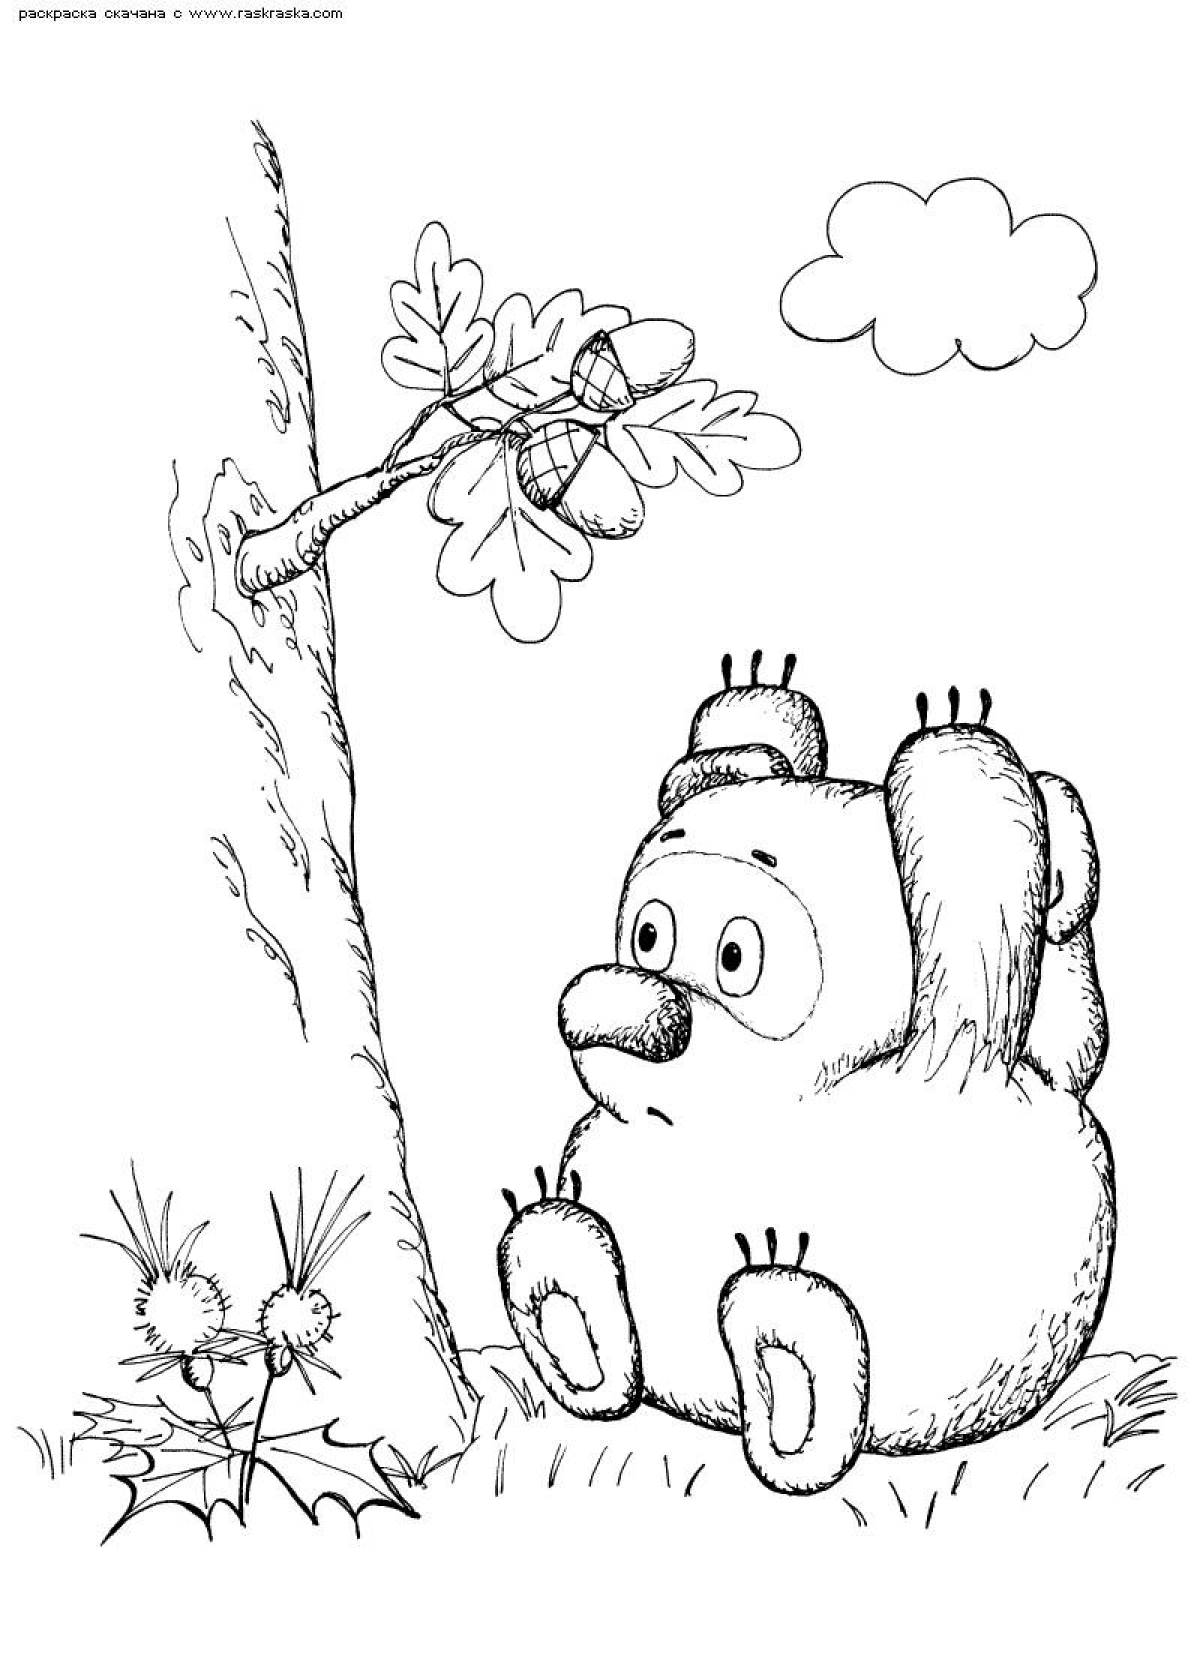 Winnie the pooh tree